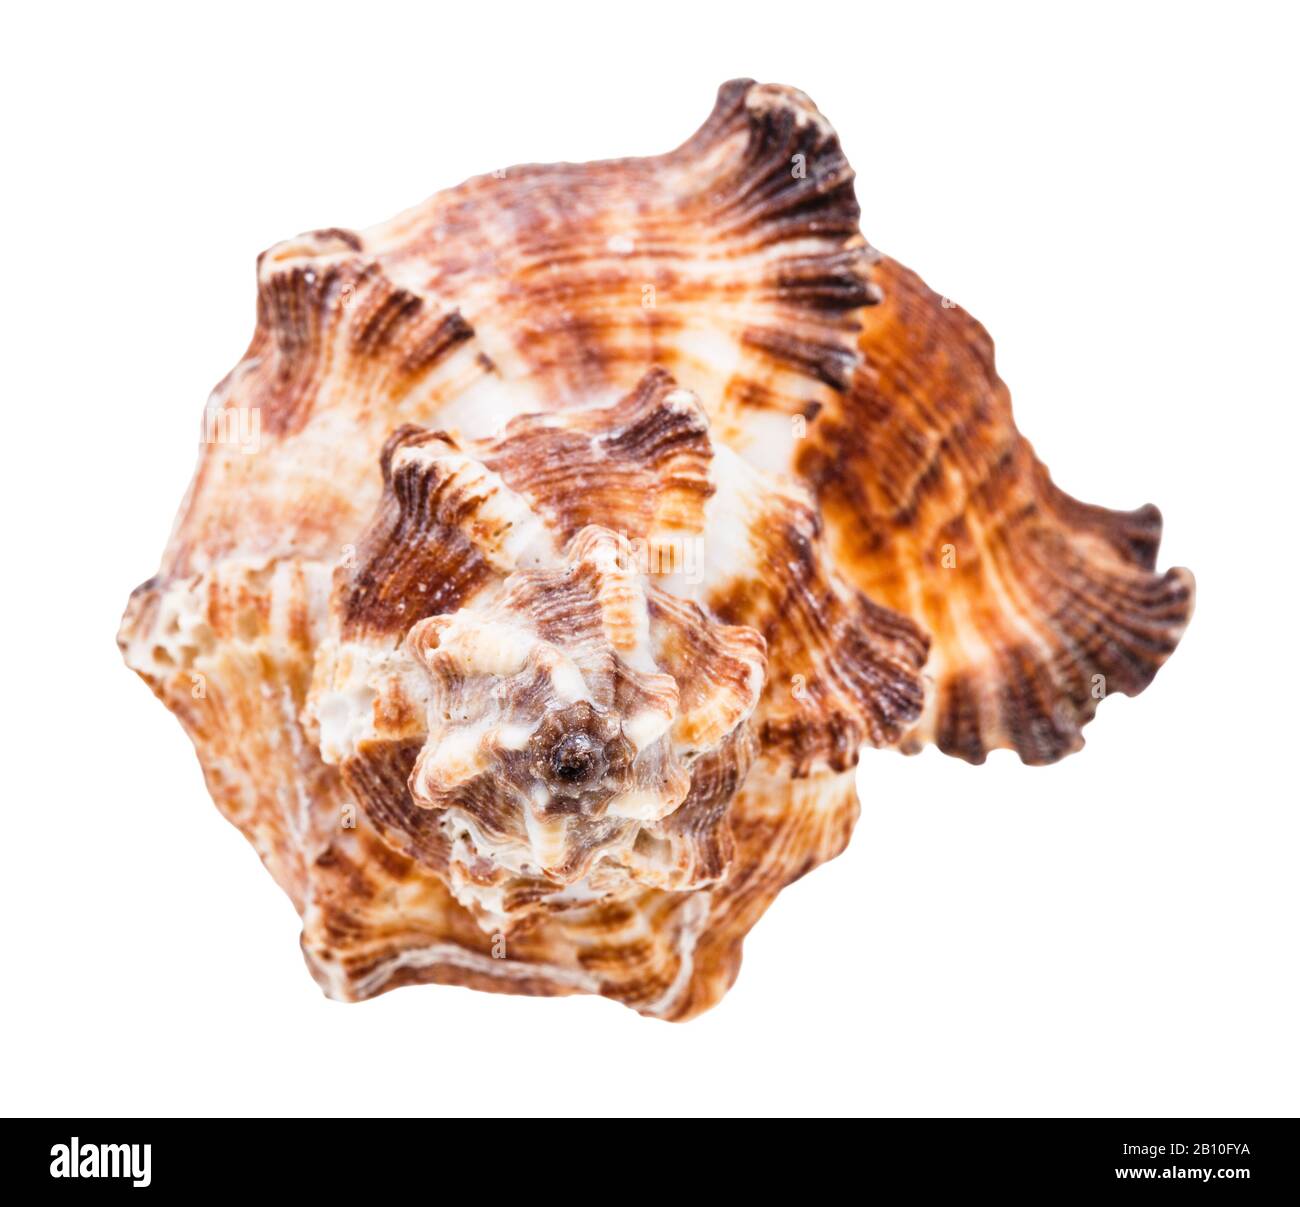 vista frontale della conchiglia dei molluschi moricidi marroni isolati su sfondo bianco Foto Stock